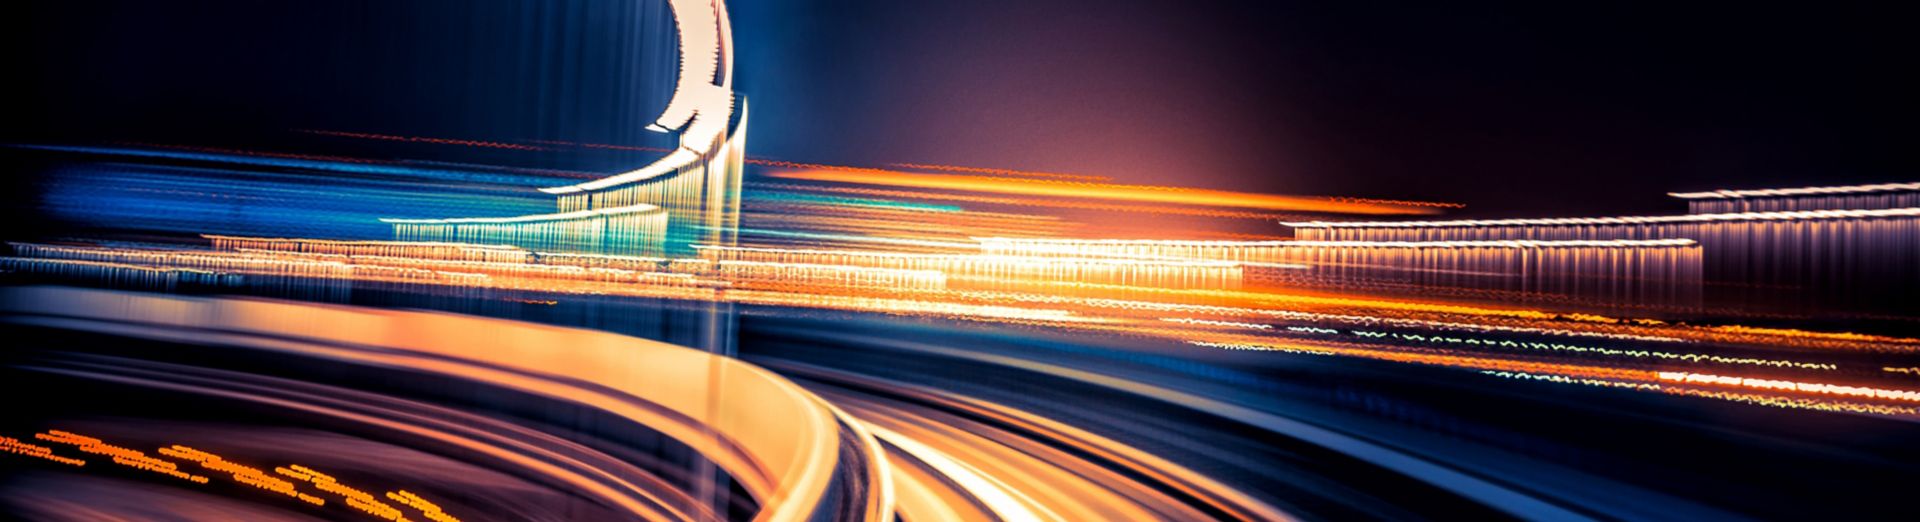 Сеть пересекающихся шоссе, символизирующая SAP Business Network